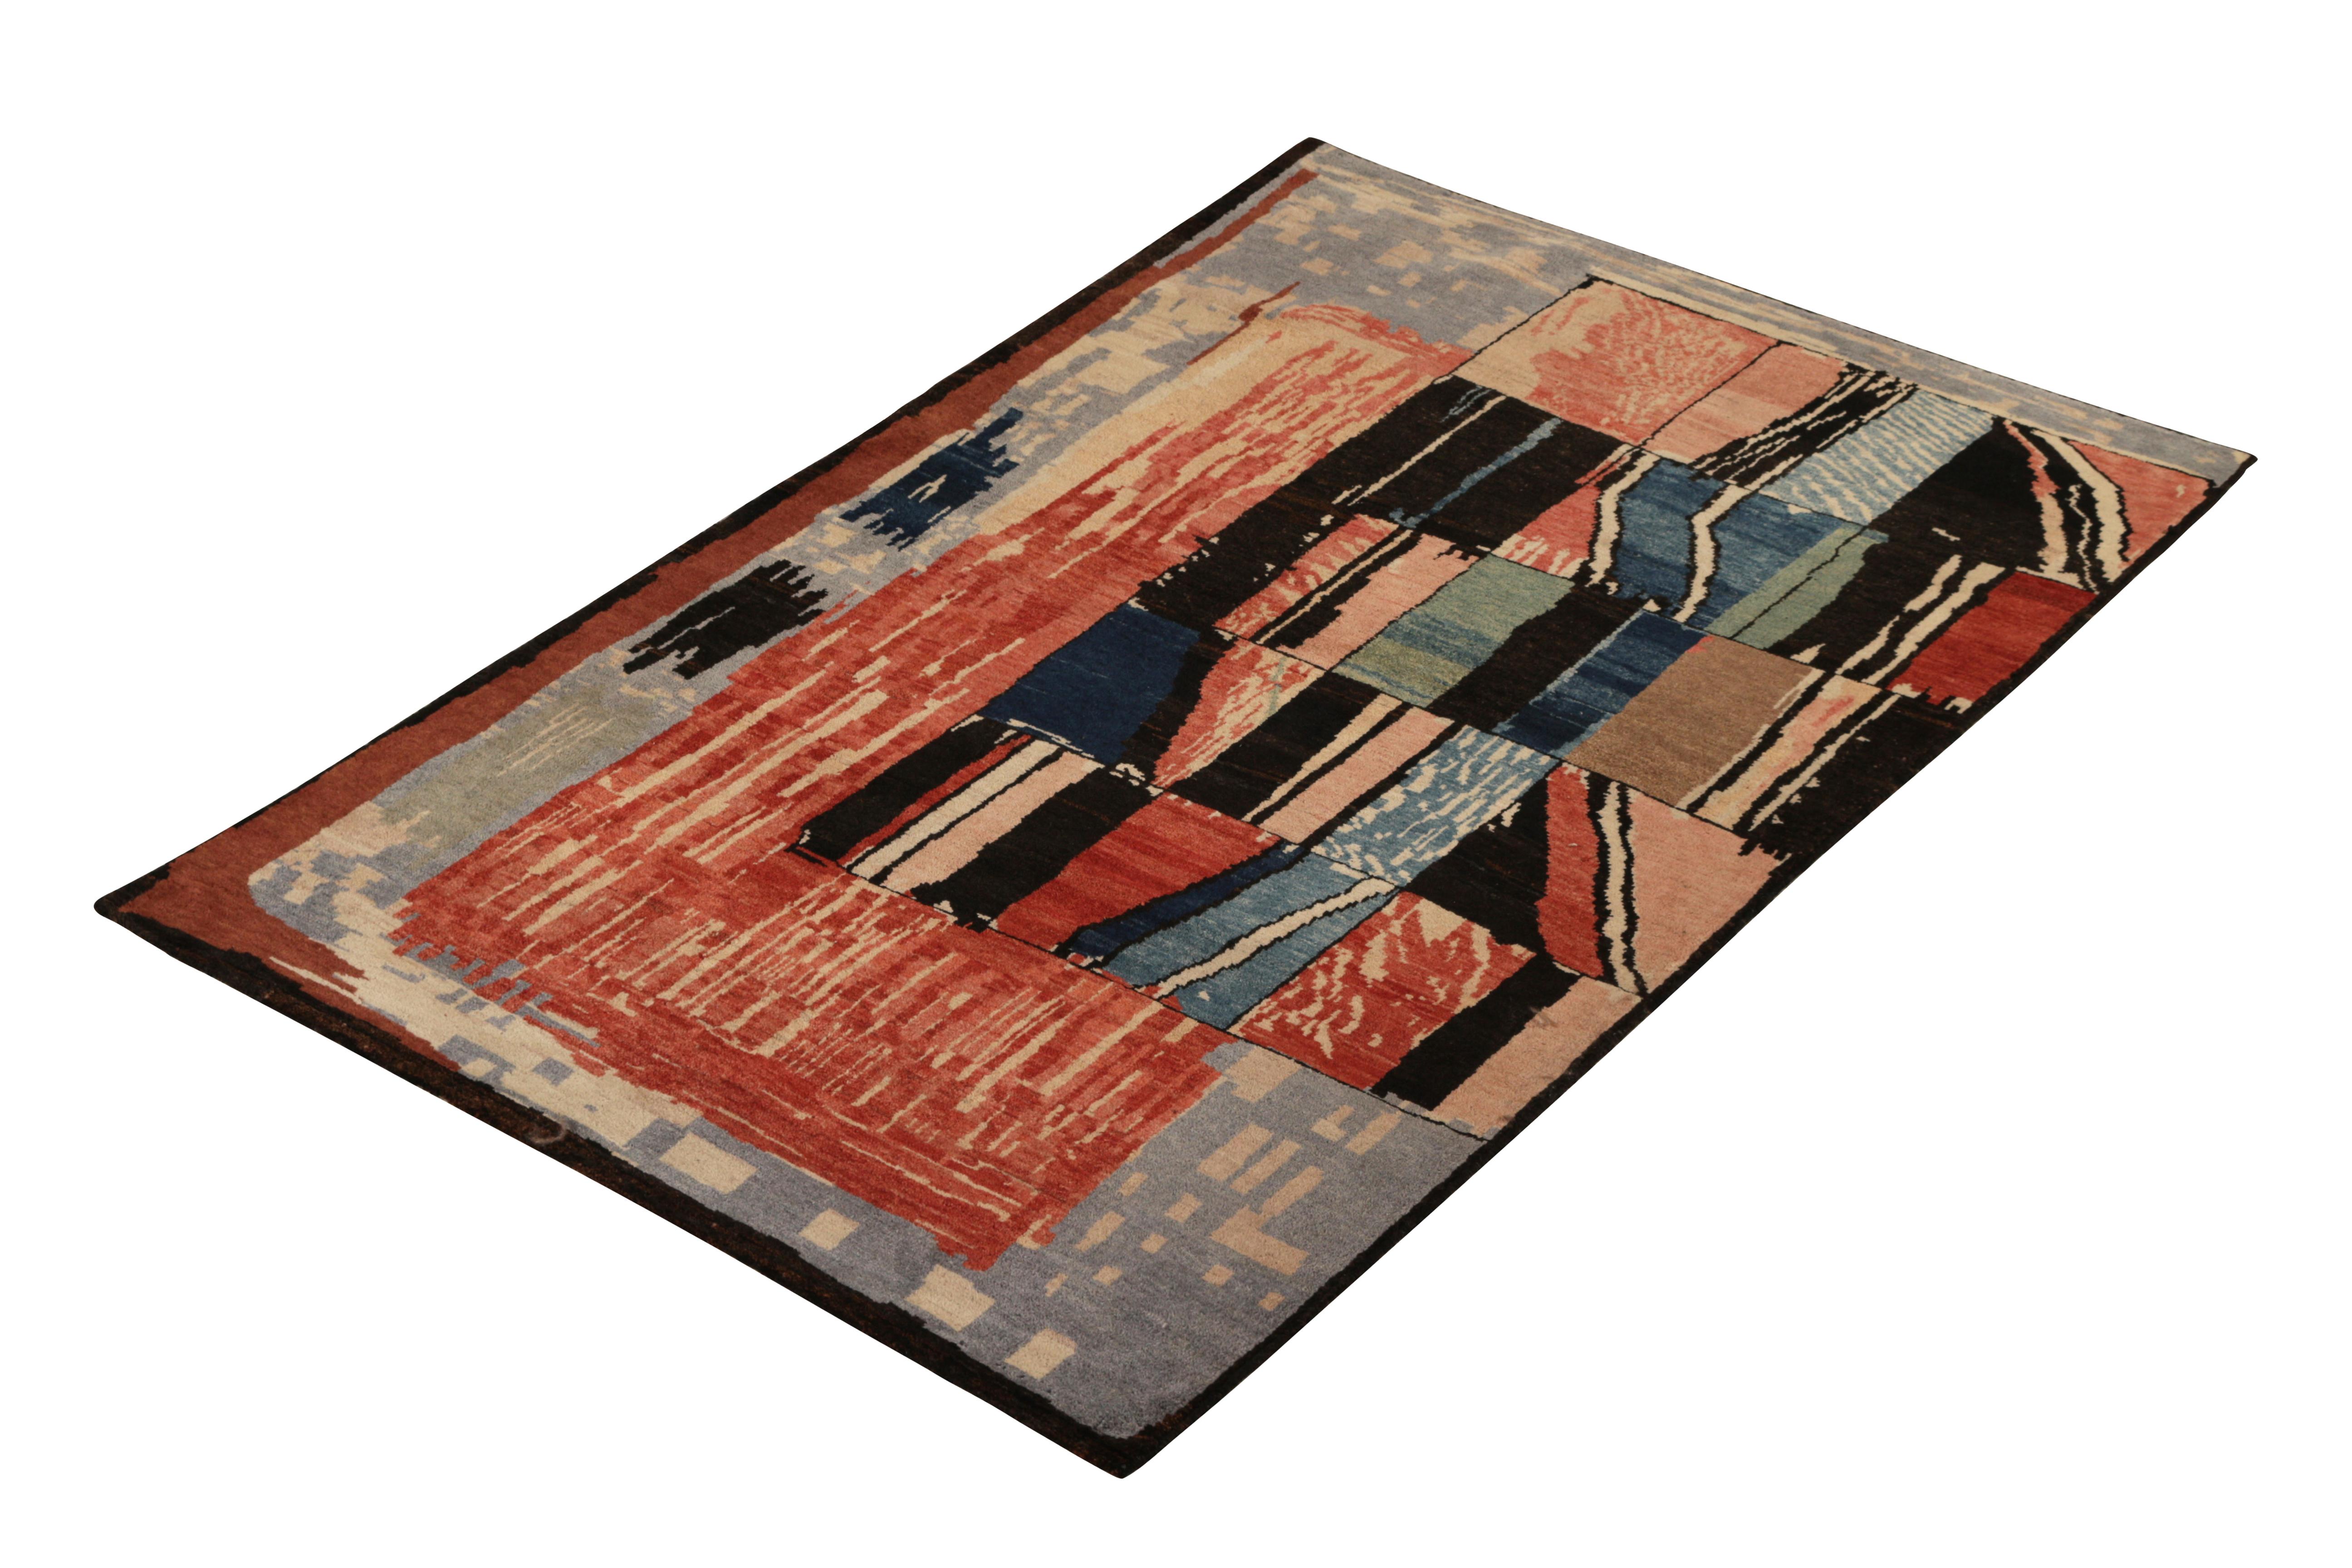 Noué à la main en laine et provenant des travaux de Teddy Sumner vers 1990, ce tapis abstrait utilise une approche artisanale de la géométrie avec un jeu saisissant d'accents rouges, bleus et multicolores, idéal pour le graphique pictural et